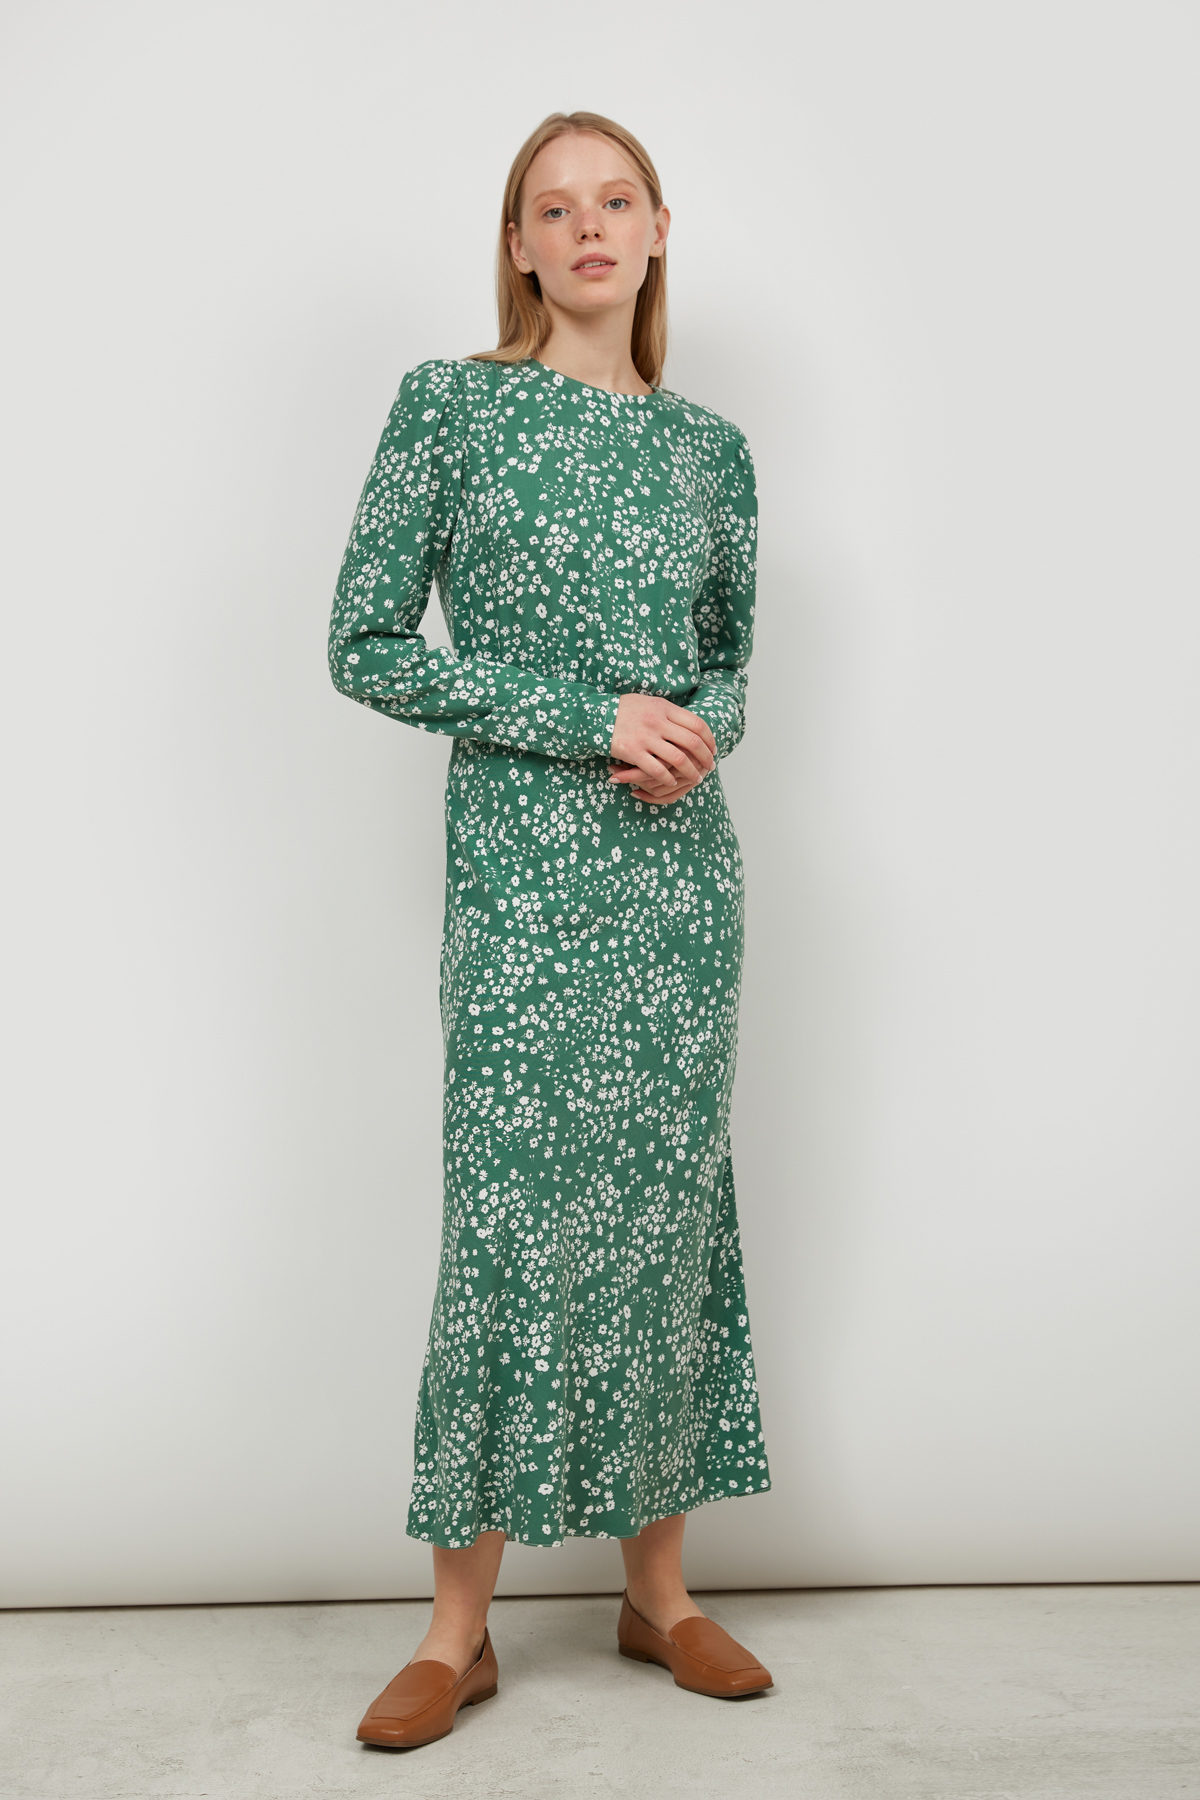 Сукня з віскози зелена в принт квіти, фото 1